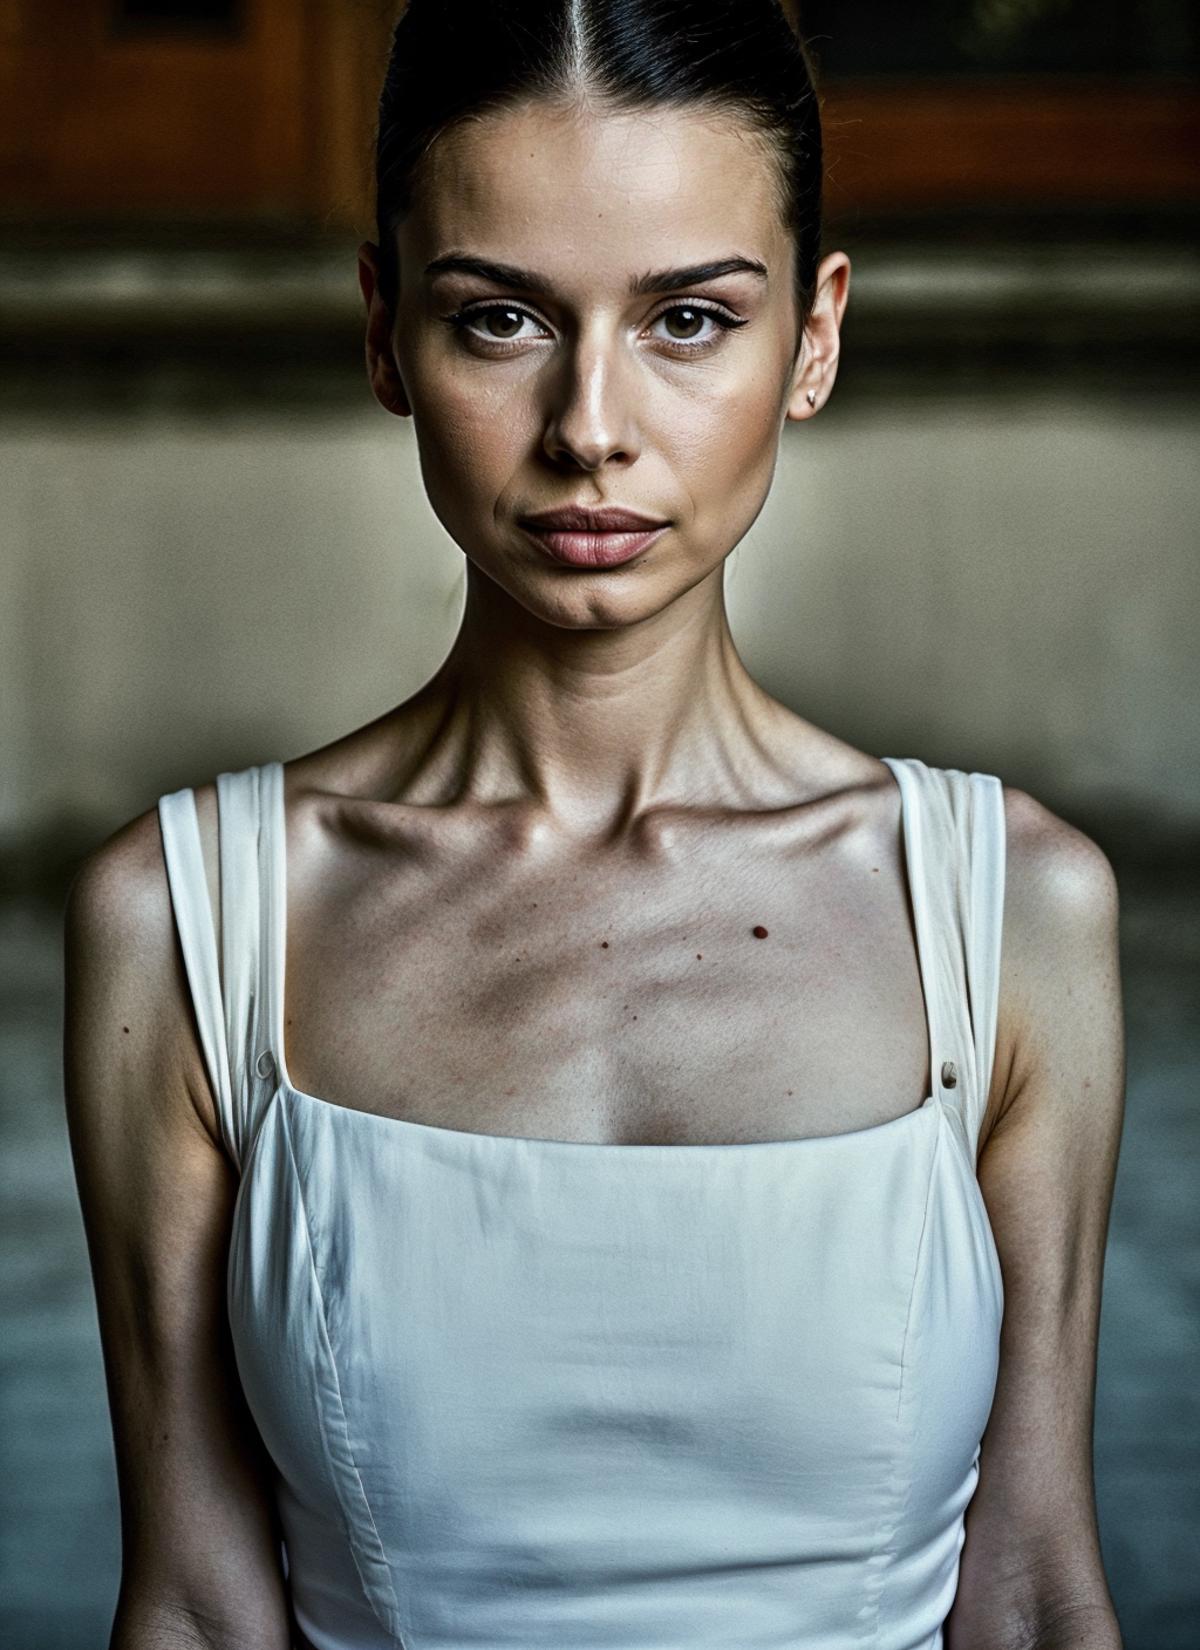 Aleksandra Sawicka image by malcolmrey